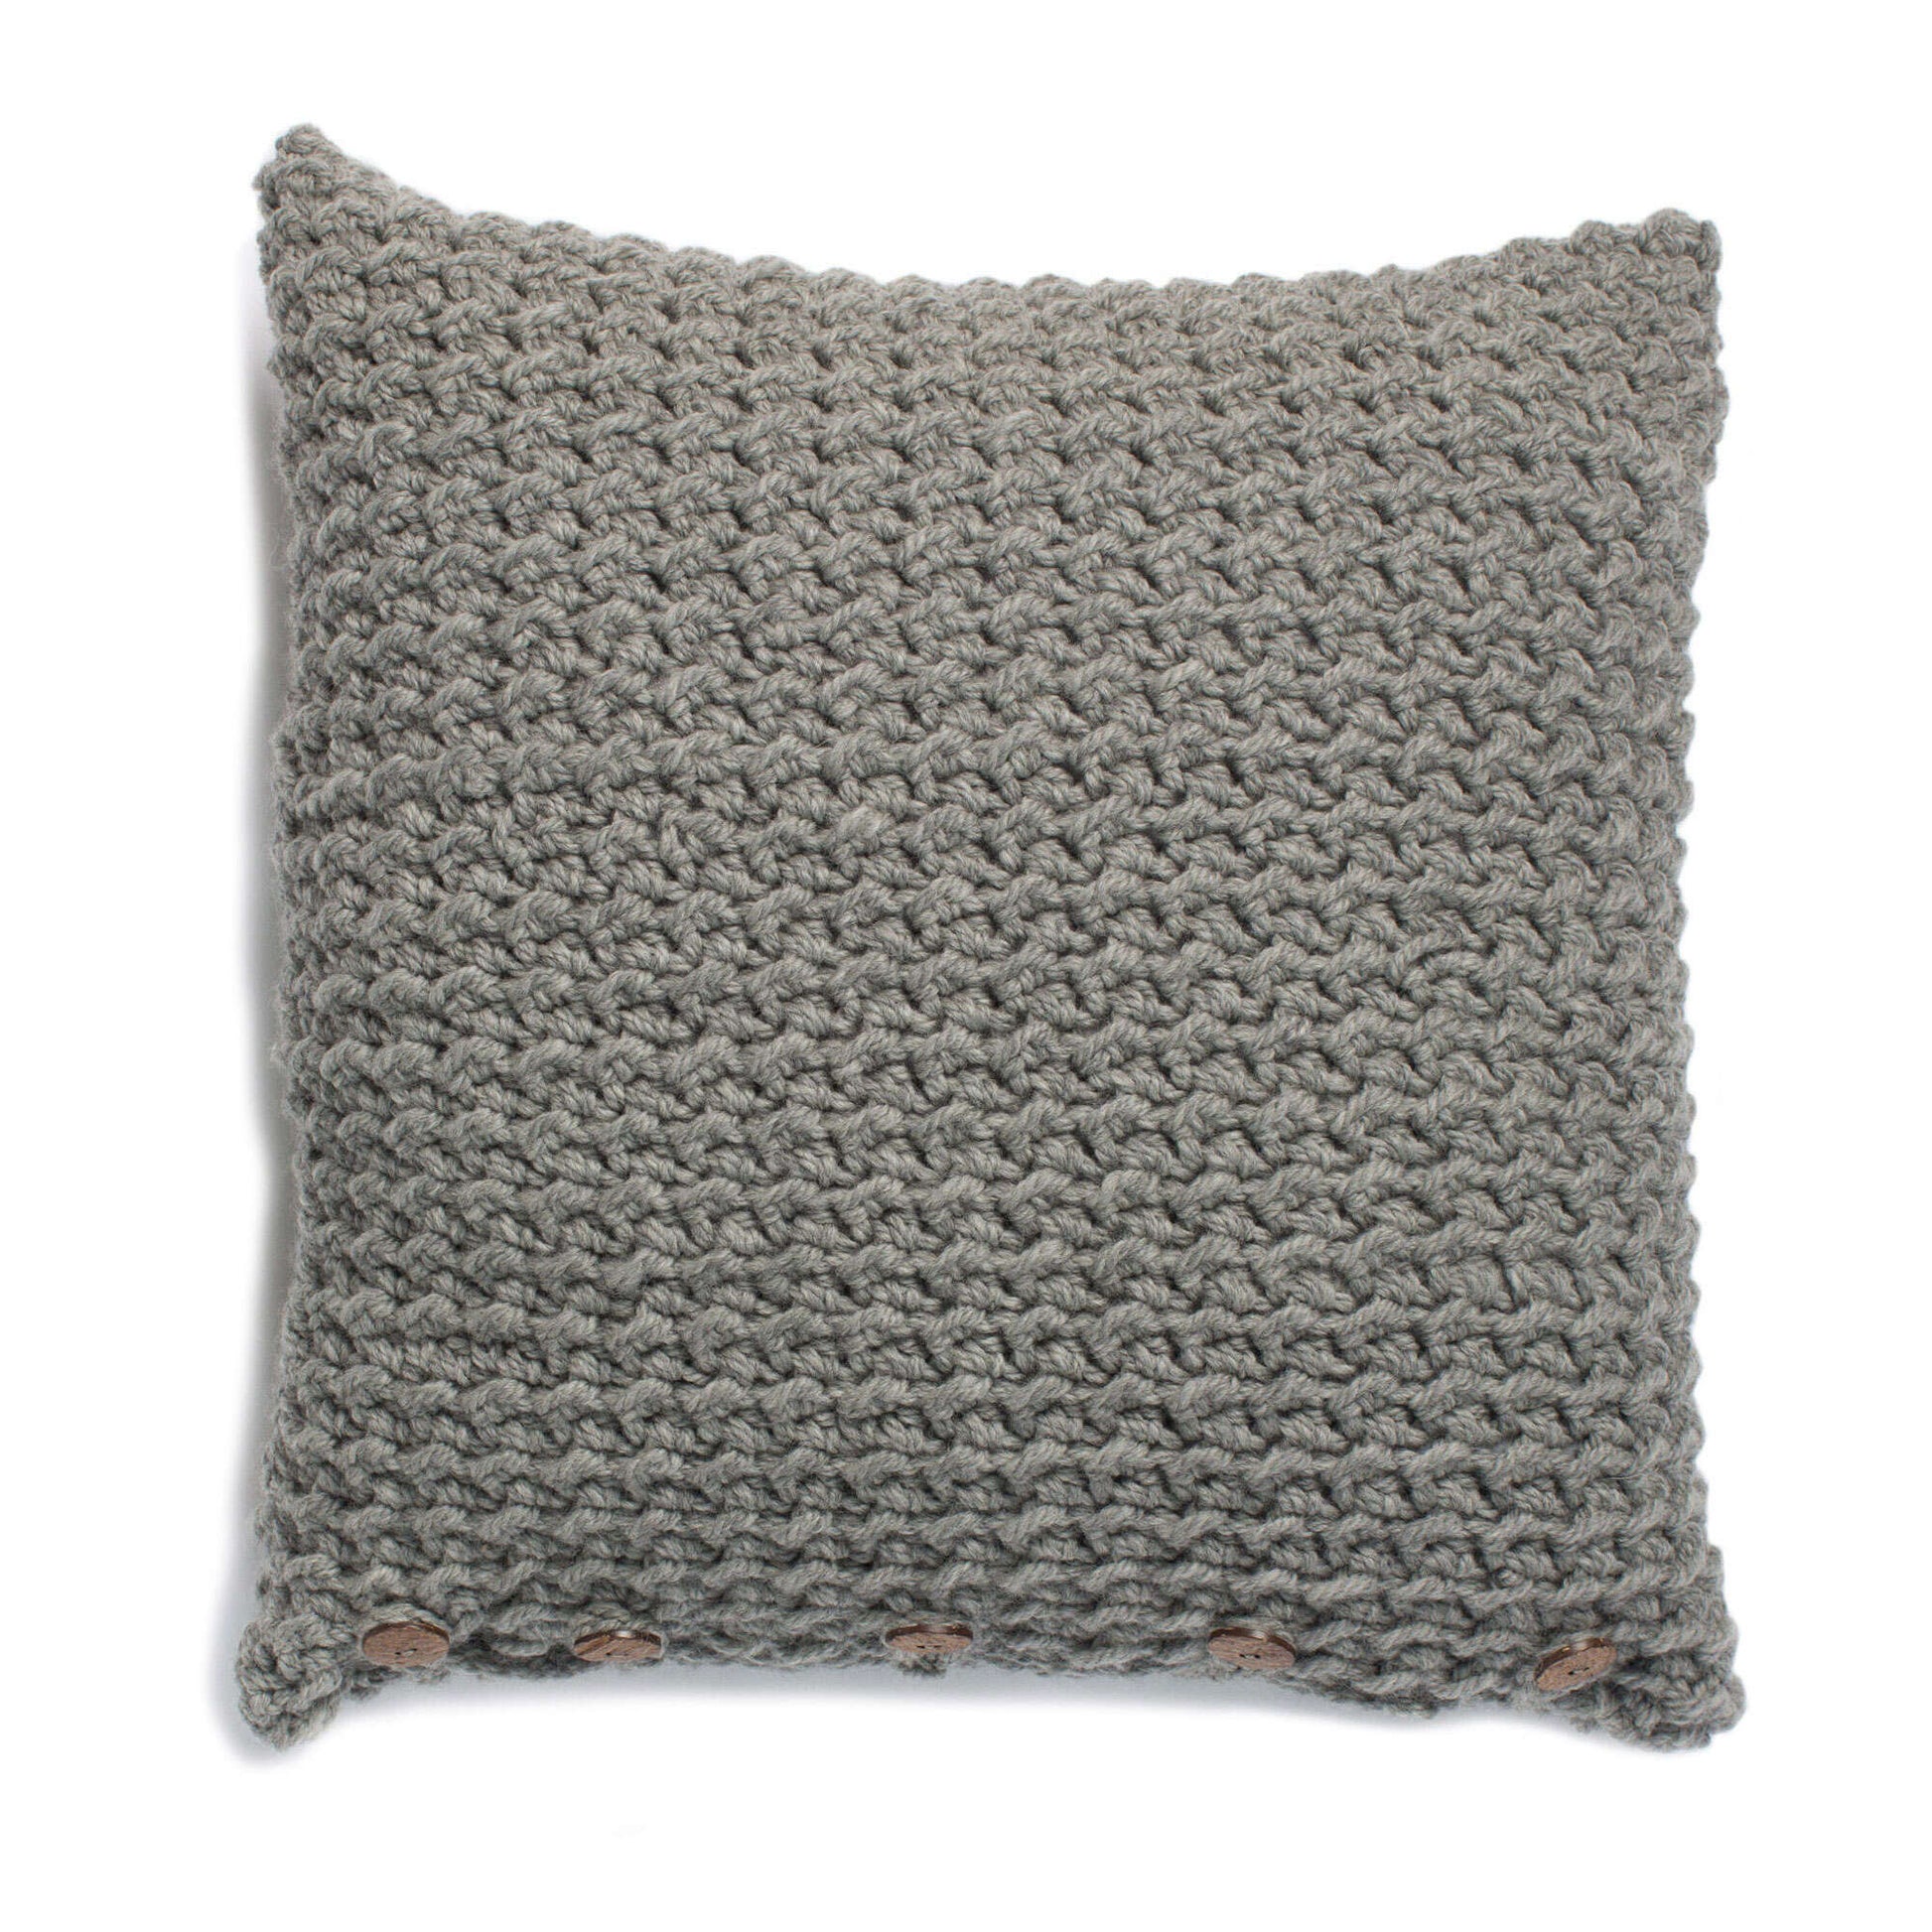 Free Patons Crochet Crunch Stitch Pillow Pattern